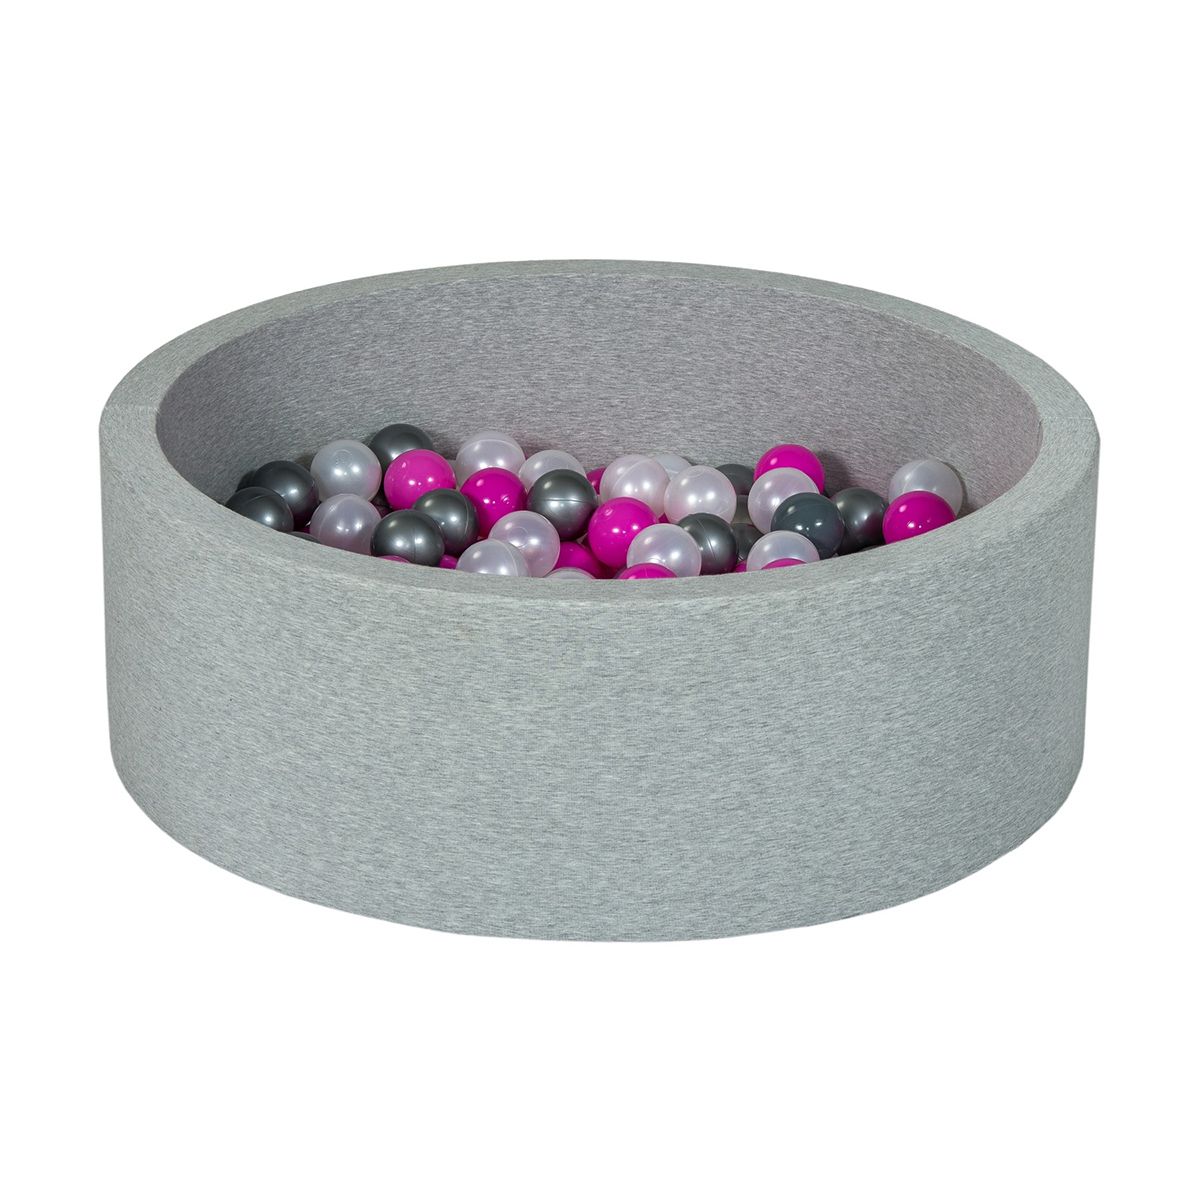  Piscine à balles Aire de jeu + 200 balles perle, rose, argent